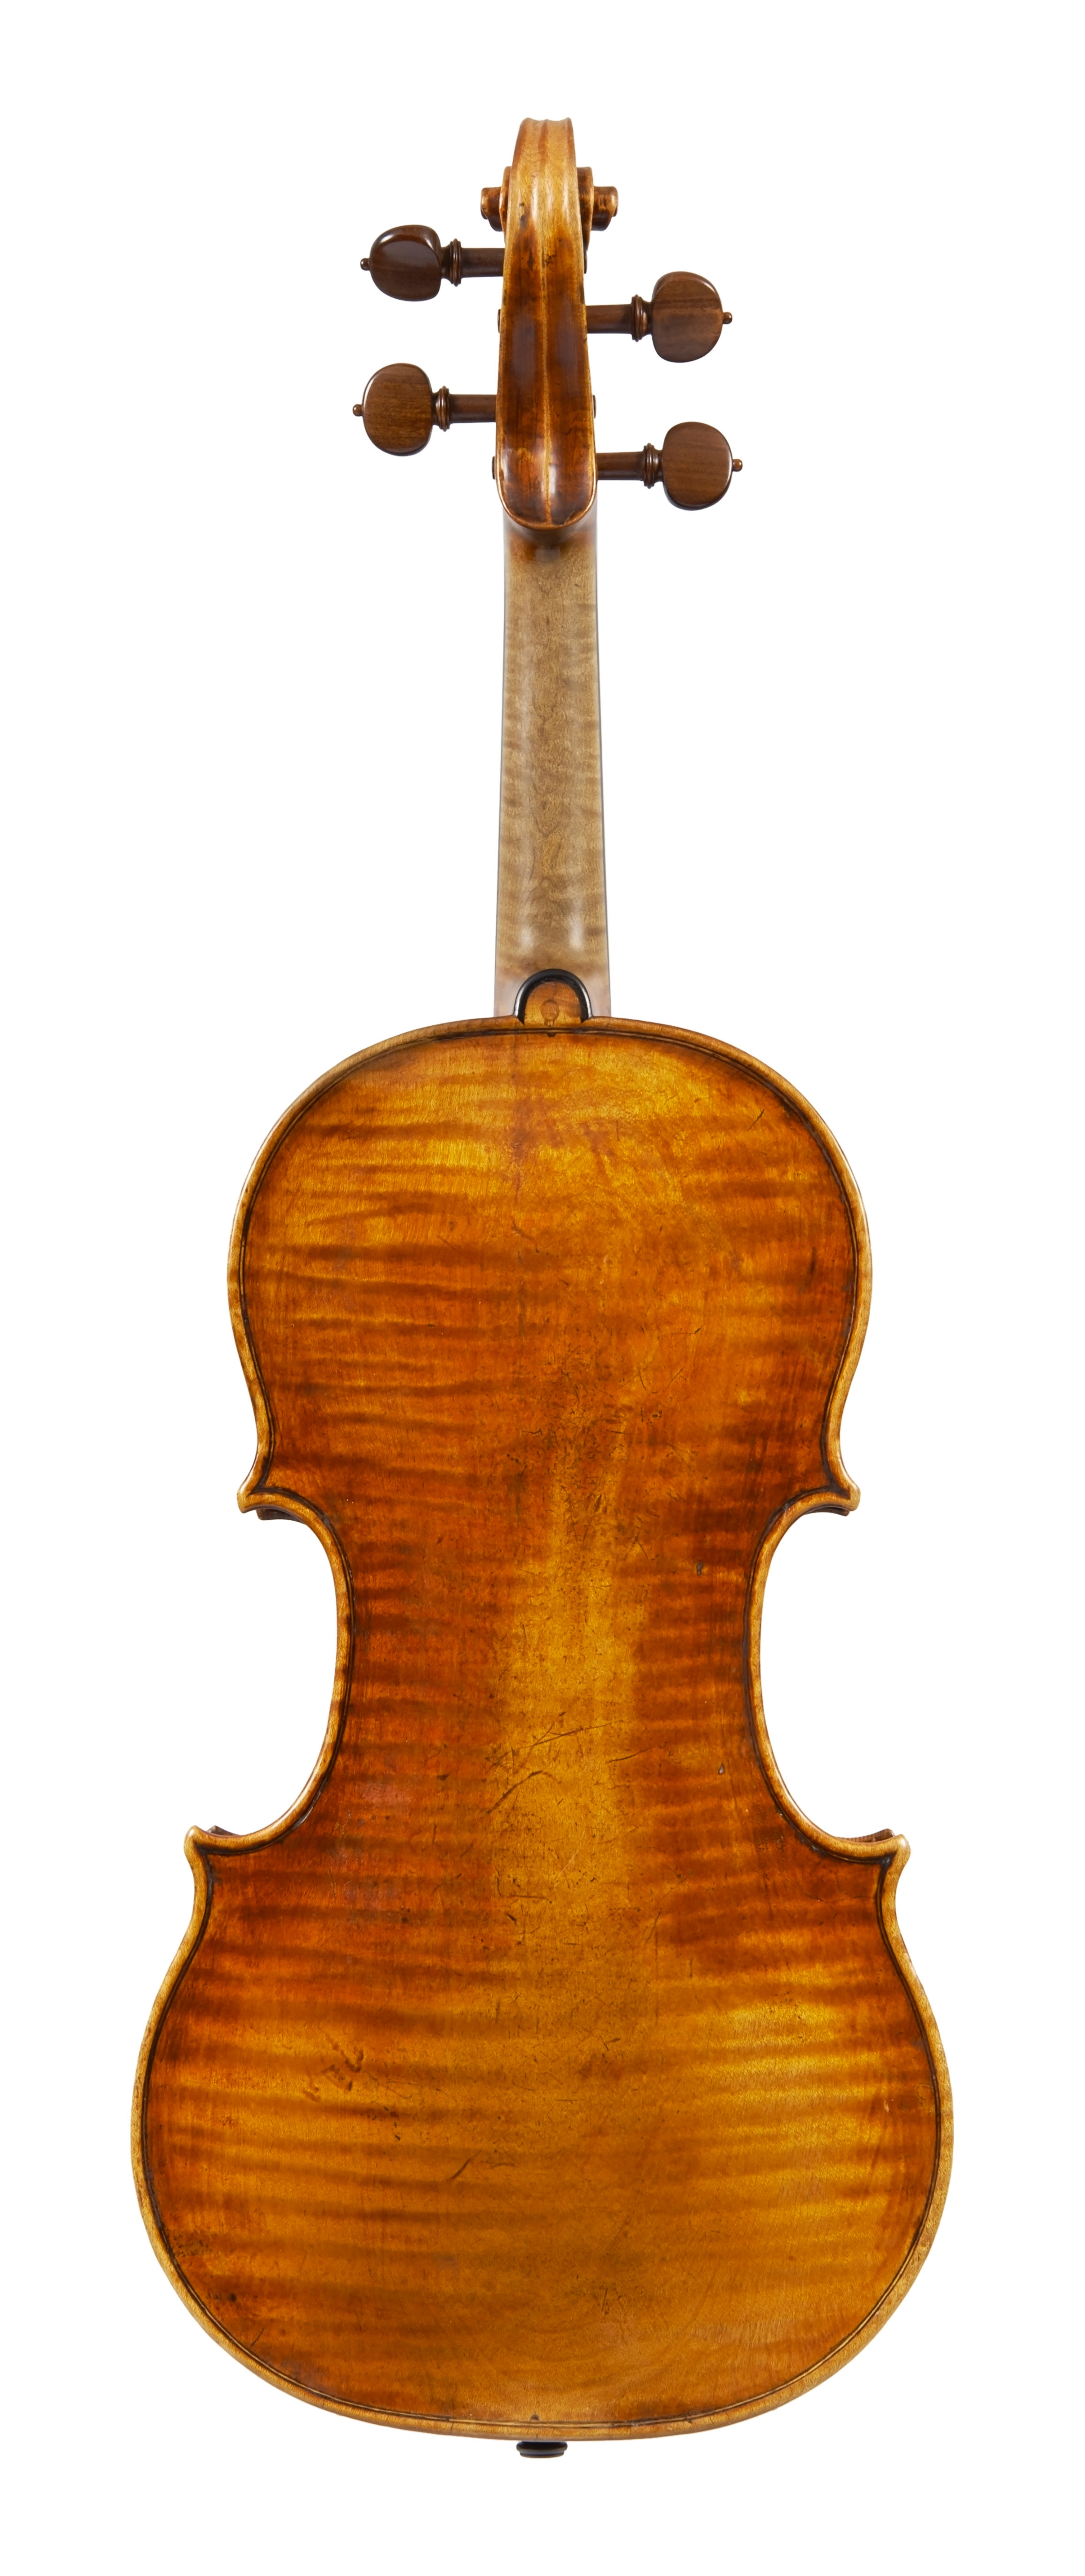 【お得在庫あ】Mateo GOFFRILLER 1700 年イタリア製バイオリン4/4 バイオリン